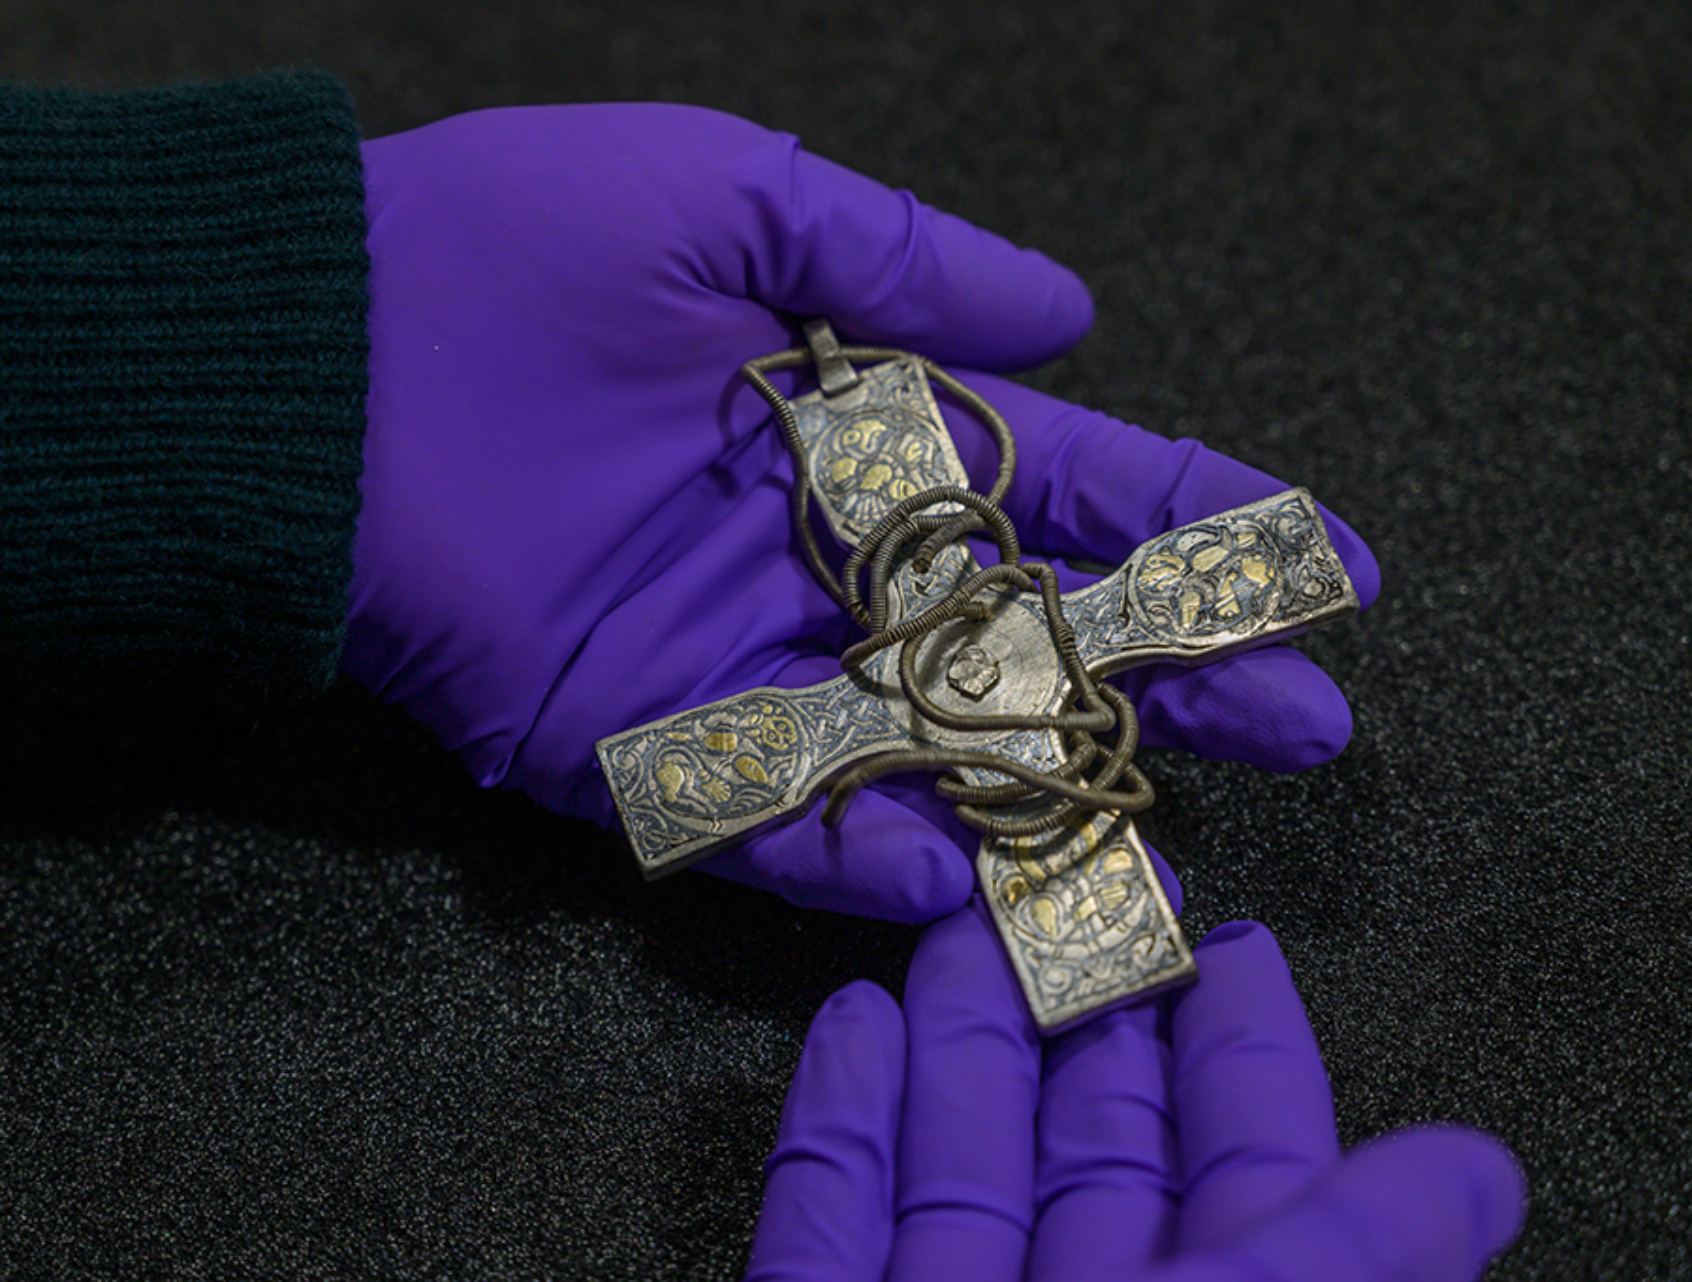 Cây thánh giá trước ngực bằng bạc được trang trí bằng dây xích từ thời đại viking Galloway Hoard.